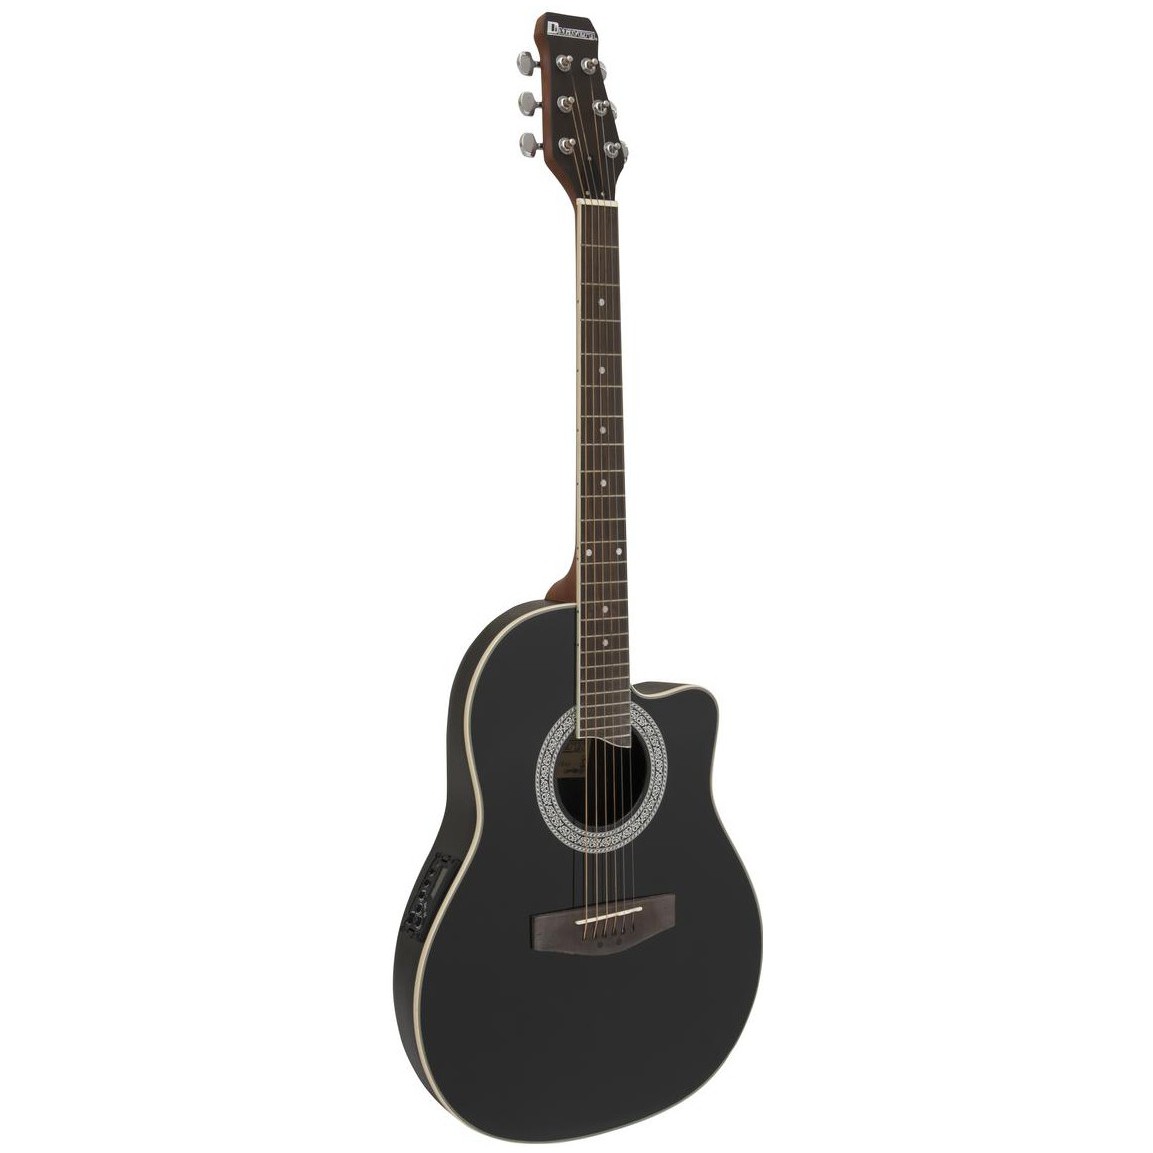 Fotografie Dimavery RB-300, elektroakustická kytara typu Ovation, černá žíhaná